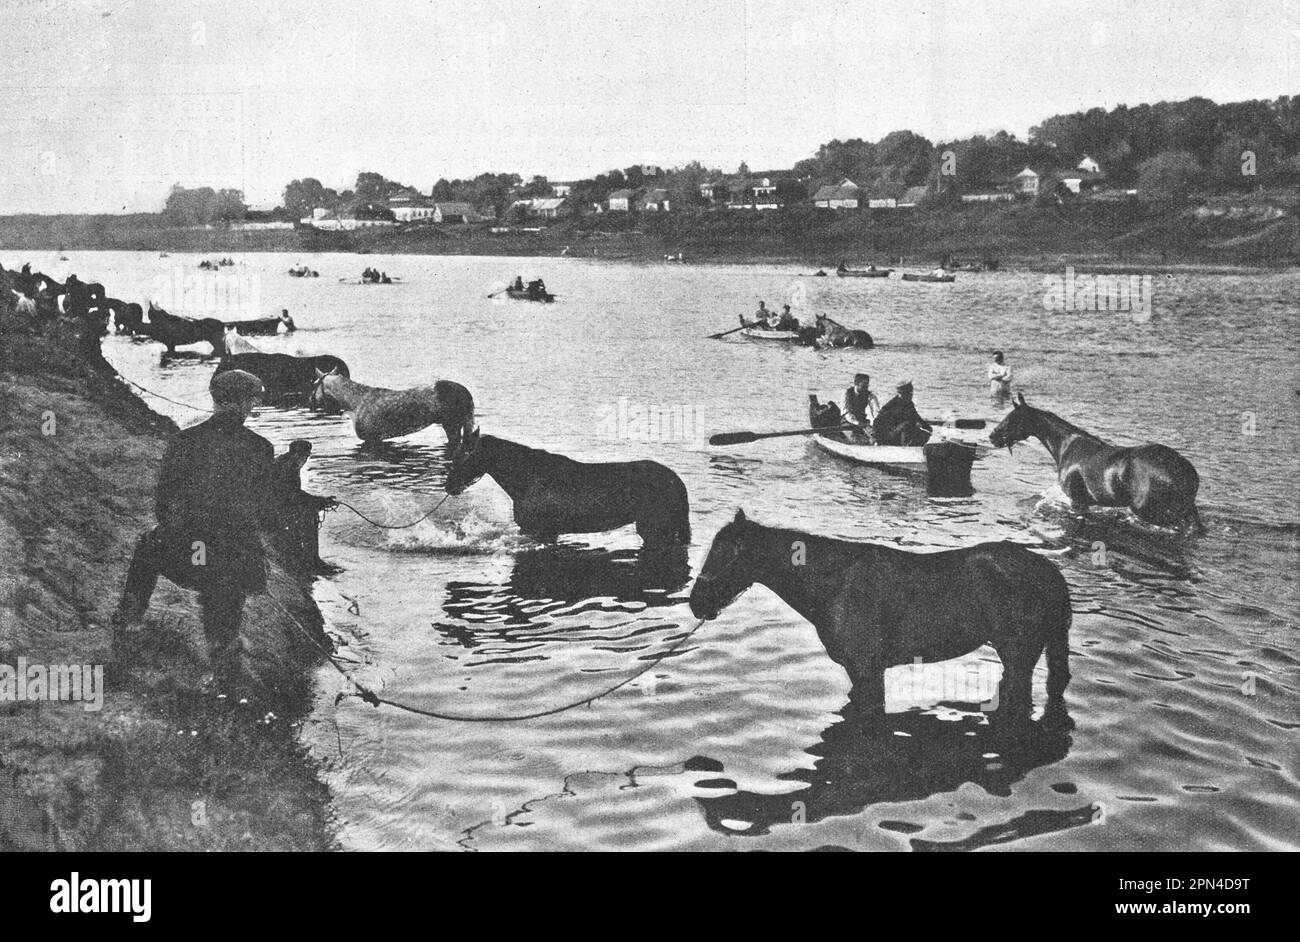 Baden von Trabrennpferden und Rennpferden im Moskauer Fluss. Foto von 1910. Stockfoto